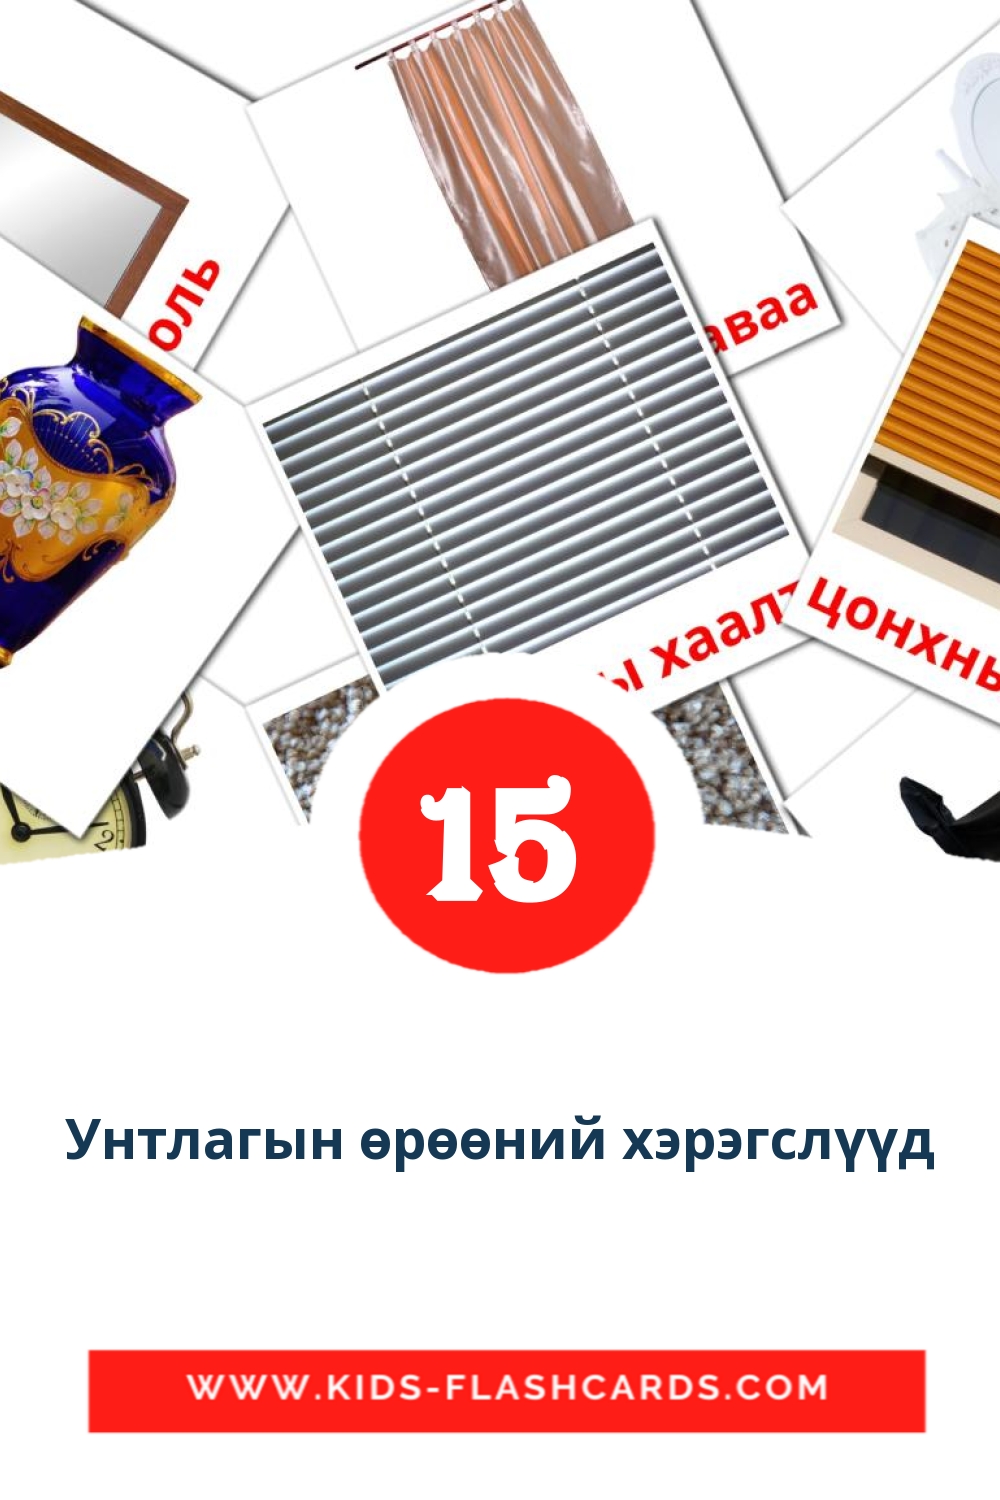 15 tarjetas didacticas de Унтлагын өрөөний хэрэгслүүд para el jardín de infancia en mongol